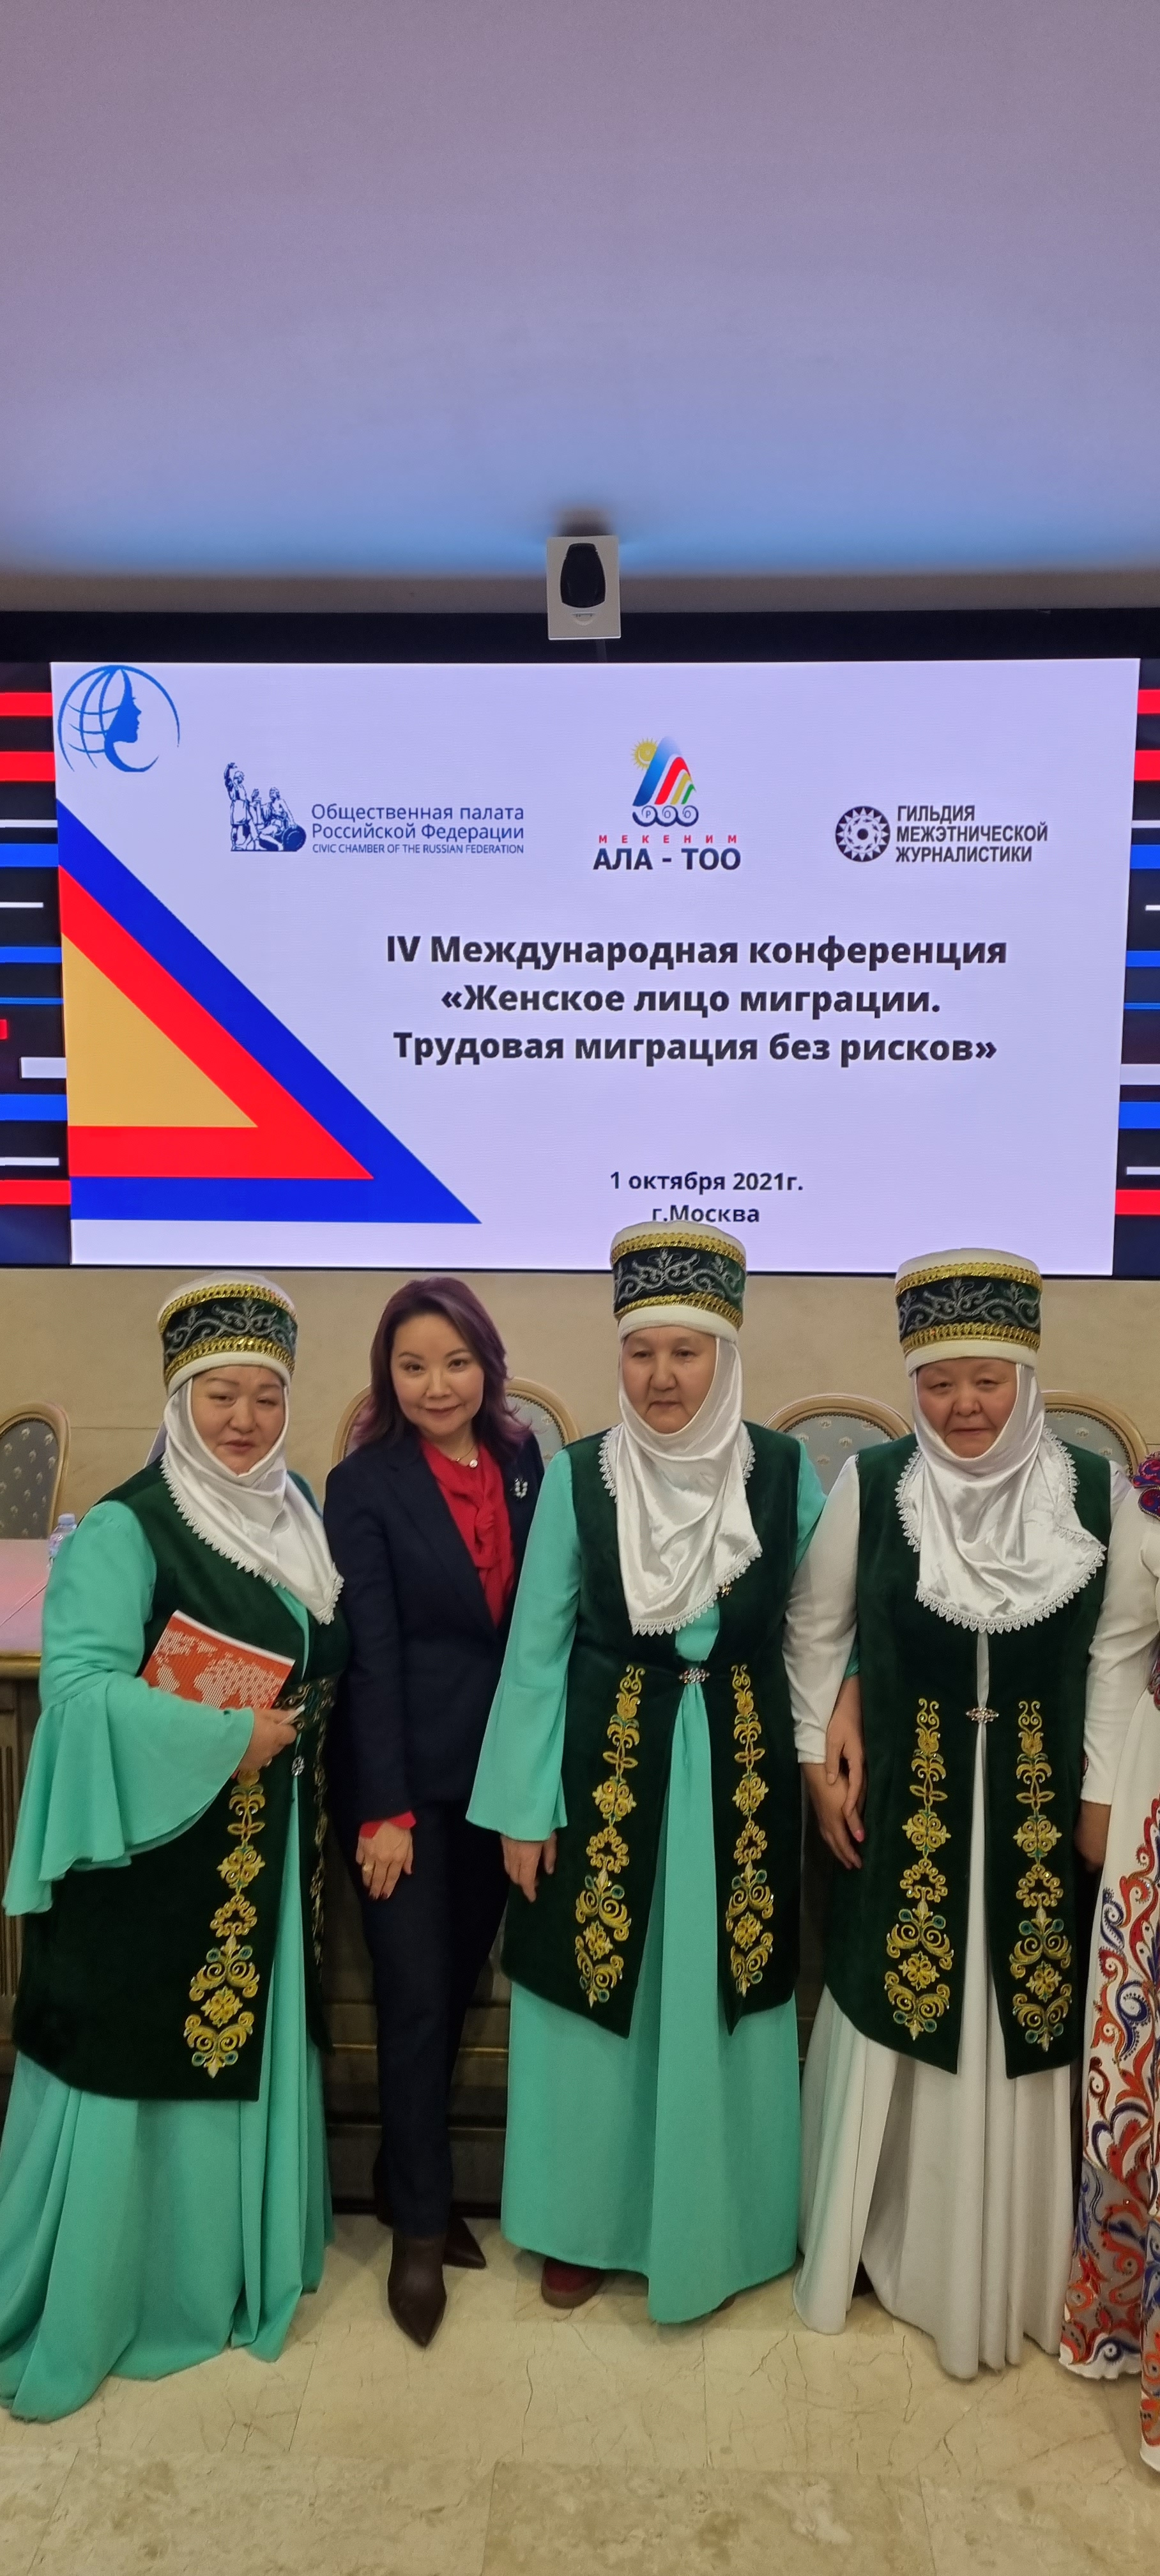  IV Международная конференция «Женское лицо миграции. Трудовая миграция без рисков» в Общественной палате Российской Федерации